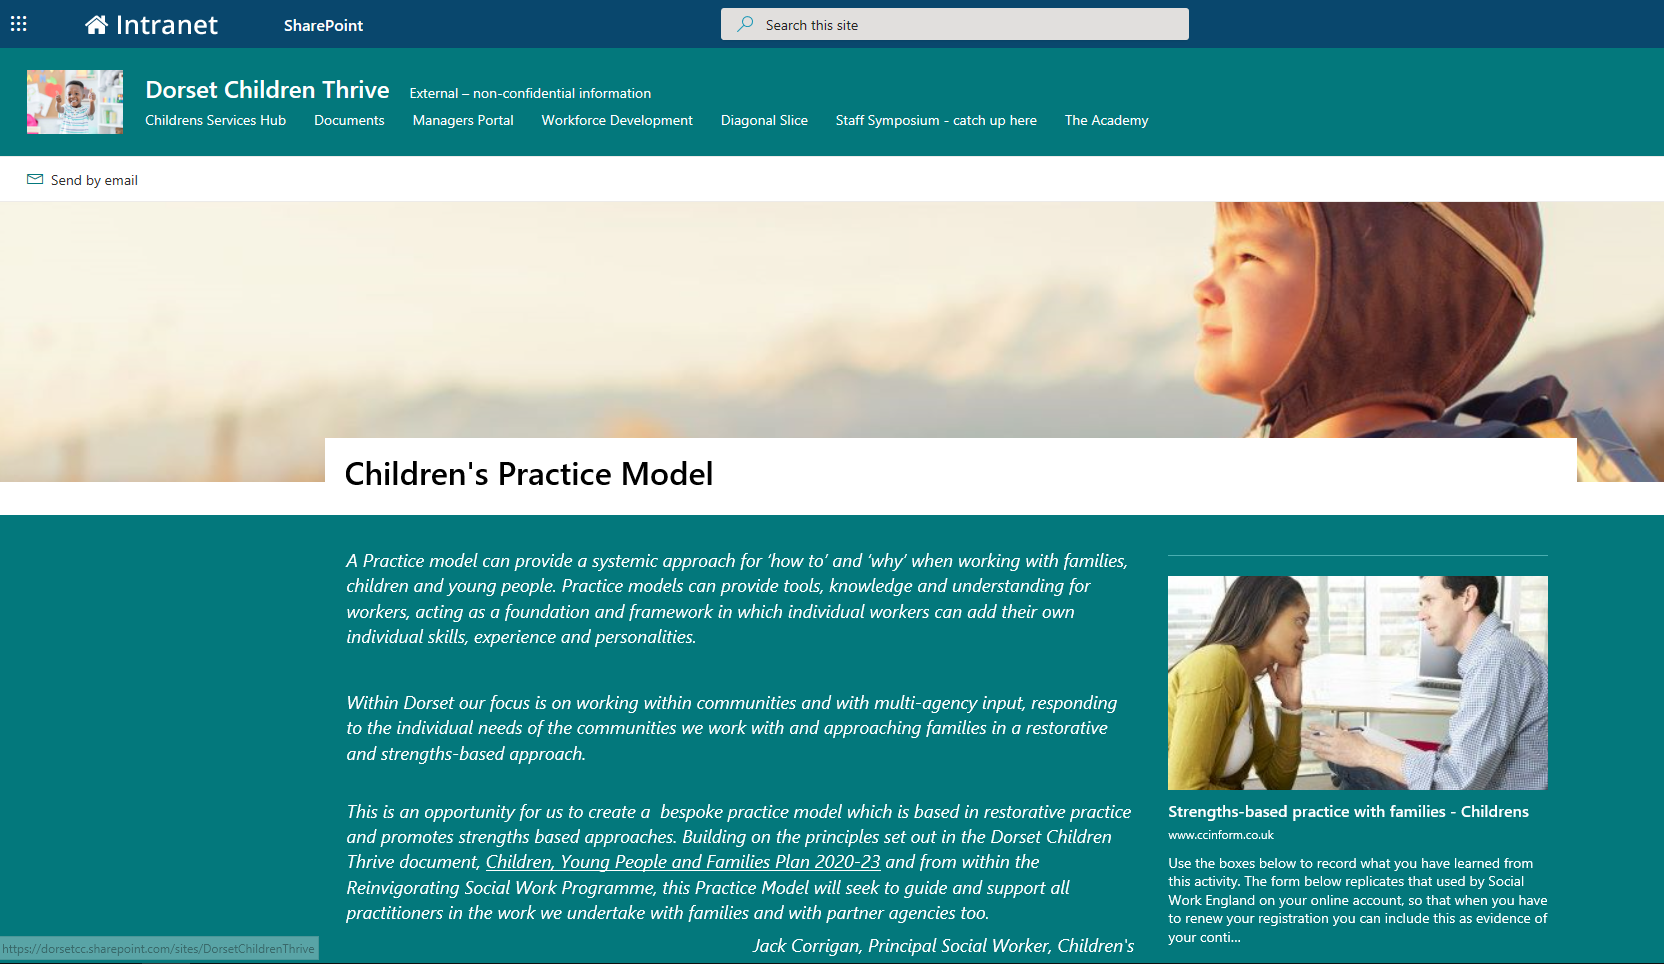 Children's Practice Model